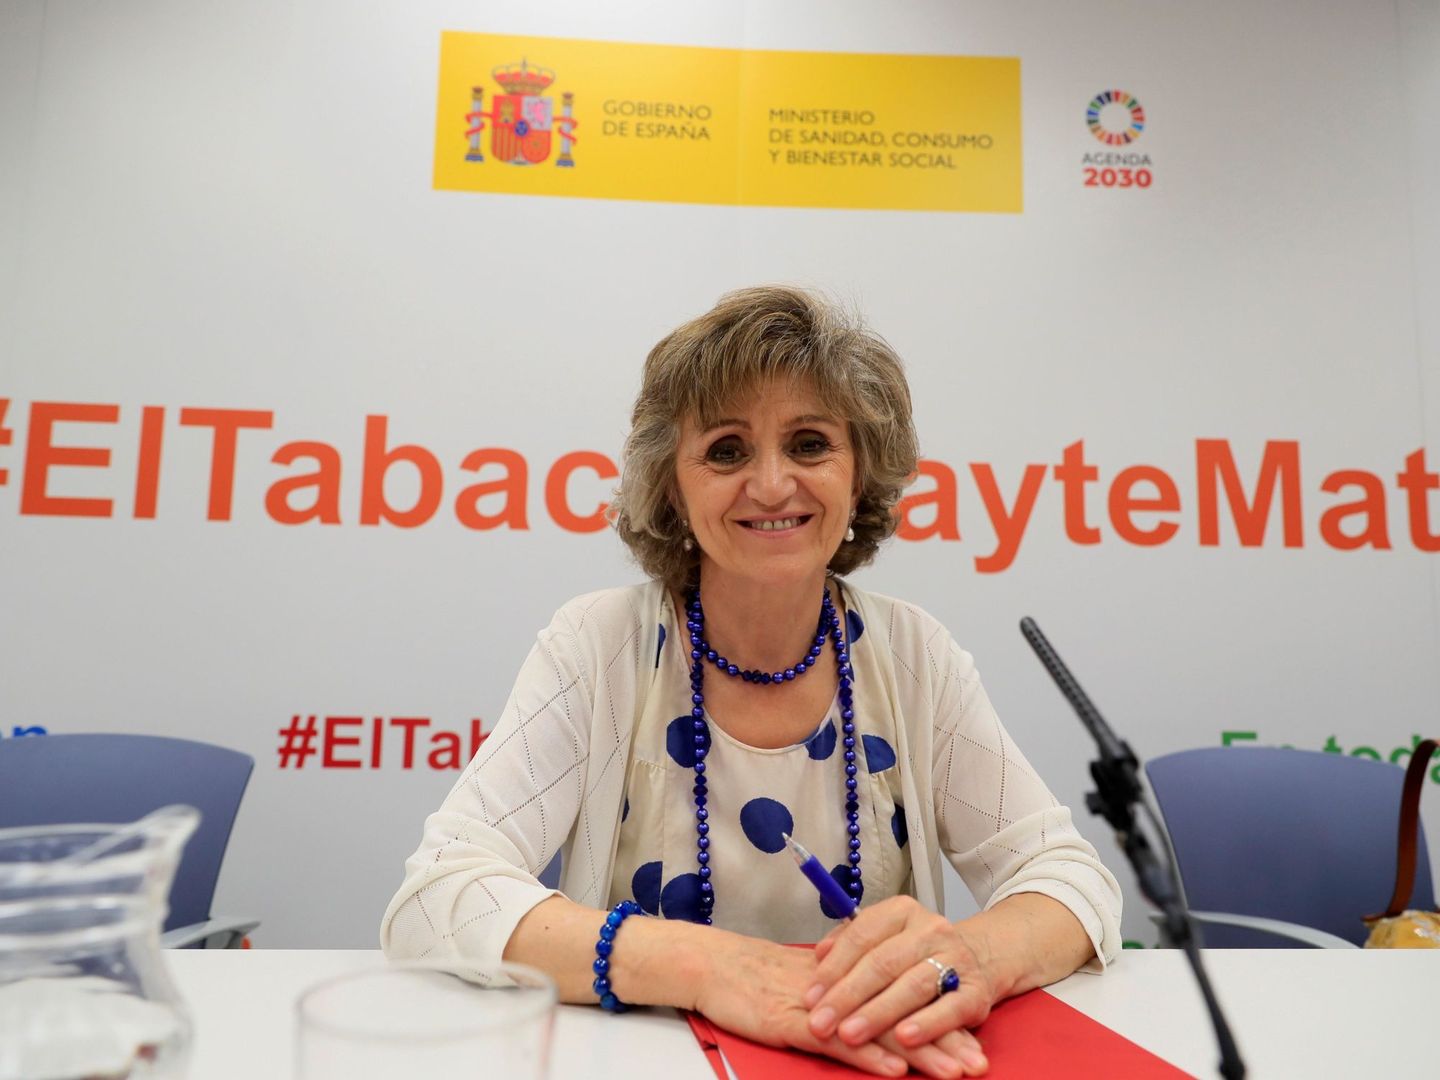 La ministra María Luisa Carcedo presenta la campaña institucional contra el tabaco este miércoles en Madrid. (Fernando Alvarado / EFE)